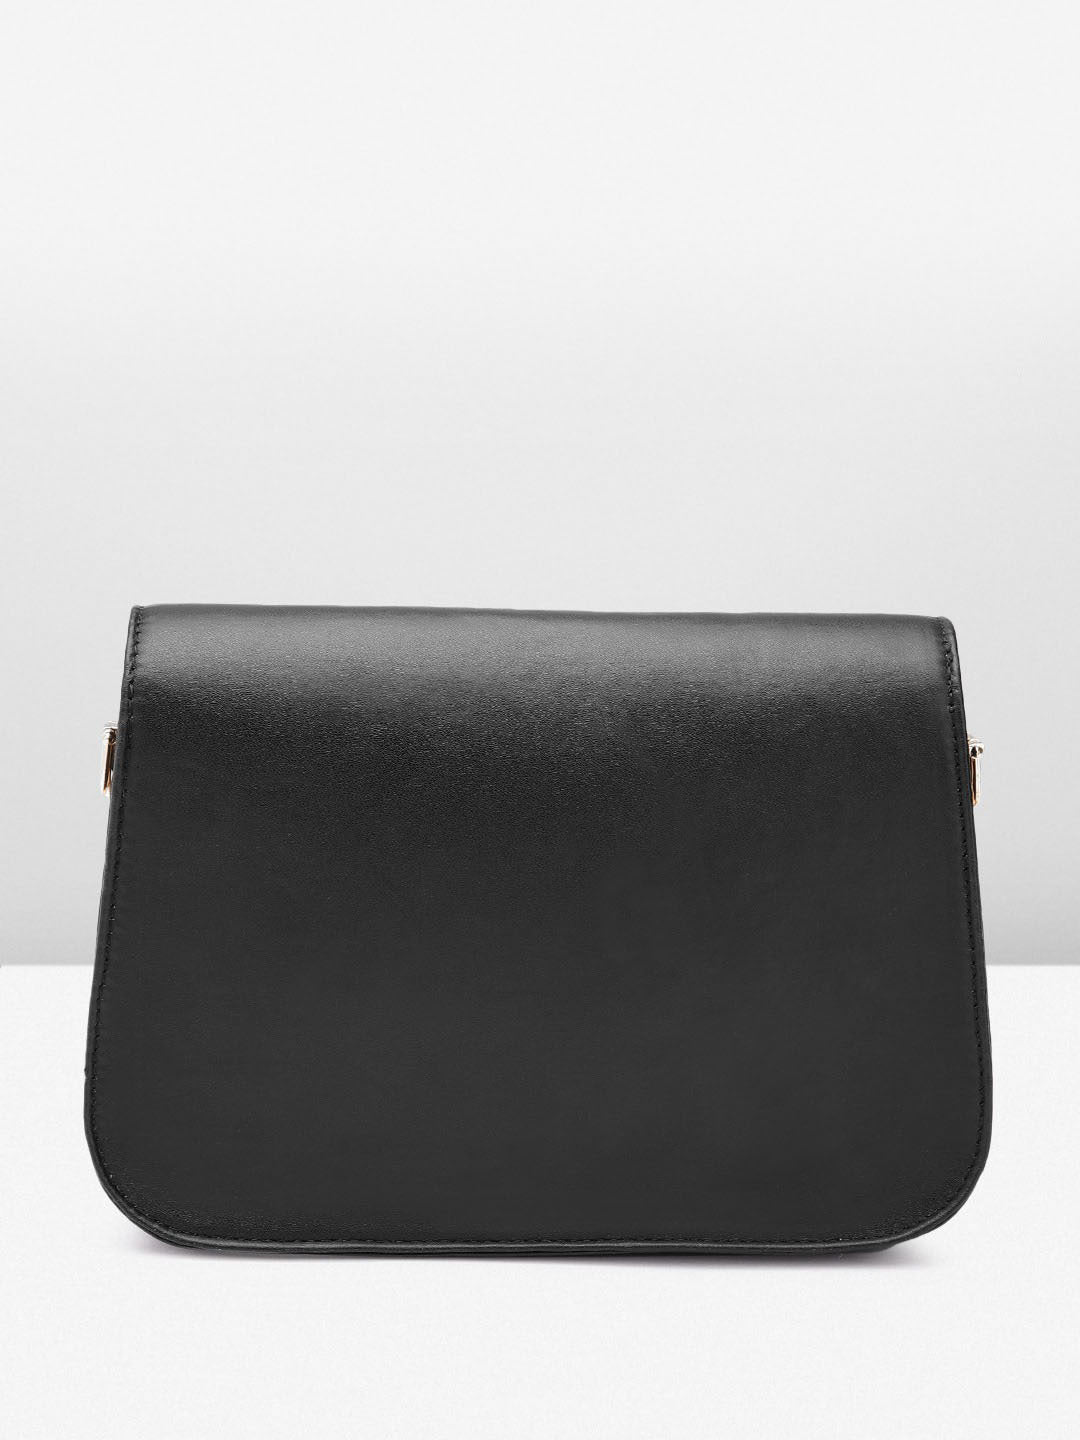 Berrylush Women Solid Black PU Detachable Sling Strap Embellished Structured Regular Sling Bag